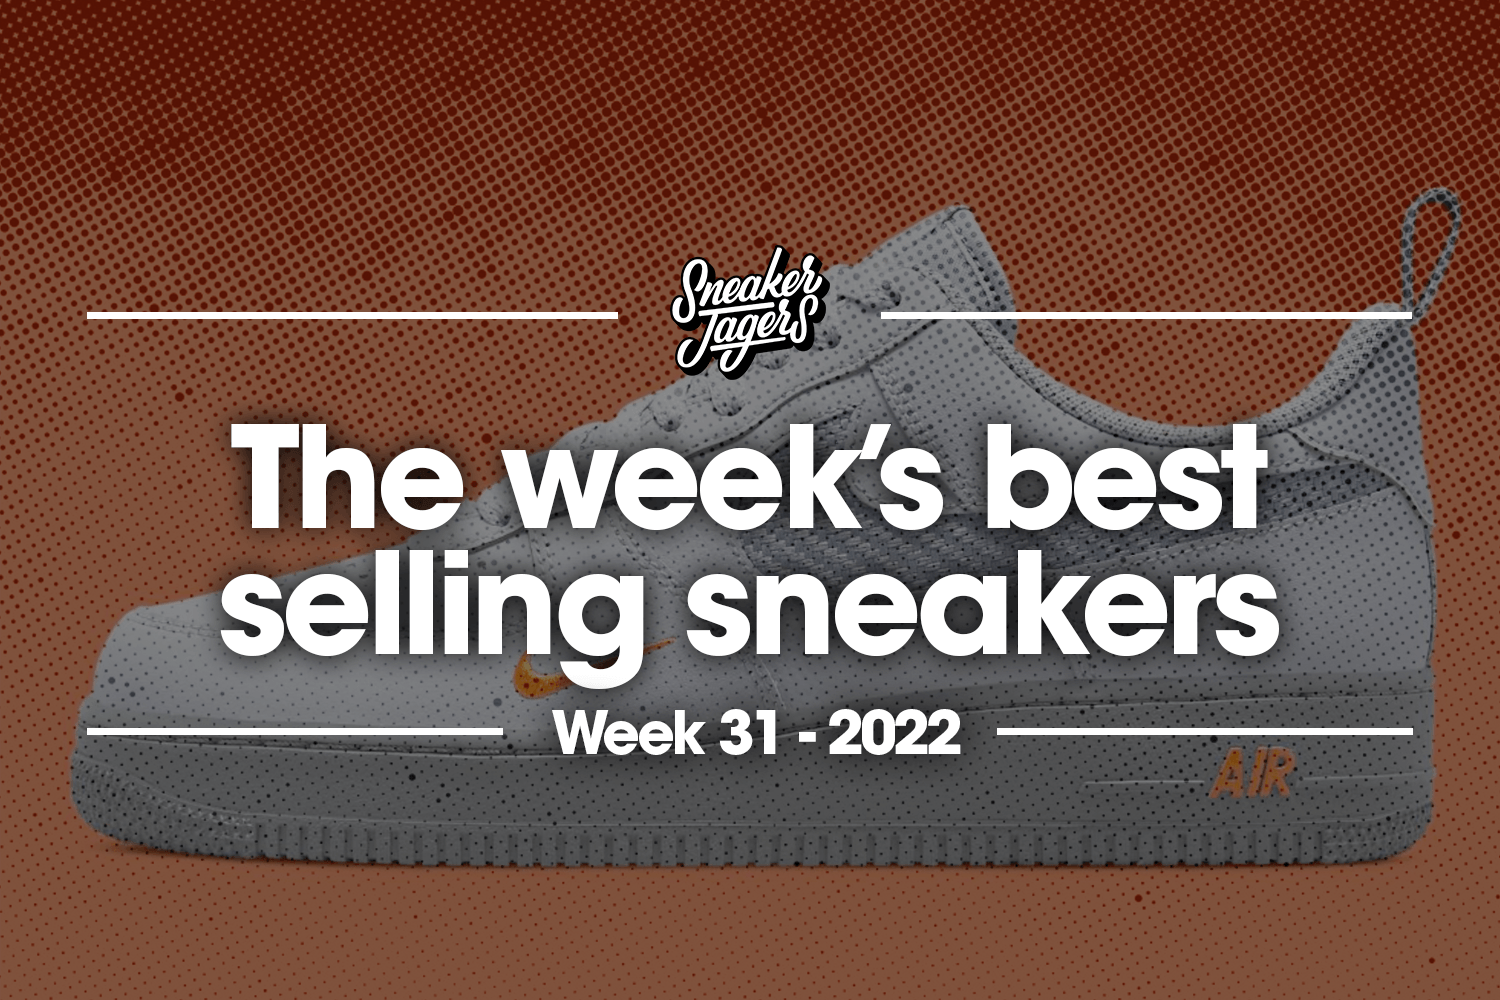 De 5 bestverkochte sneakers van WK31